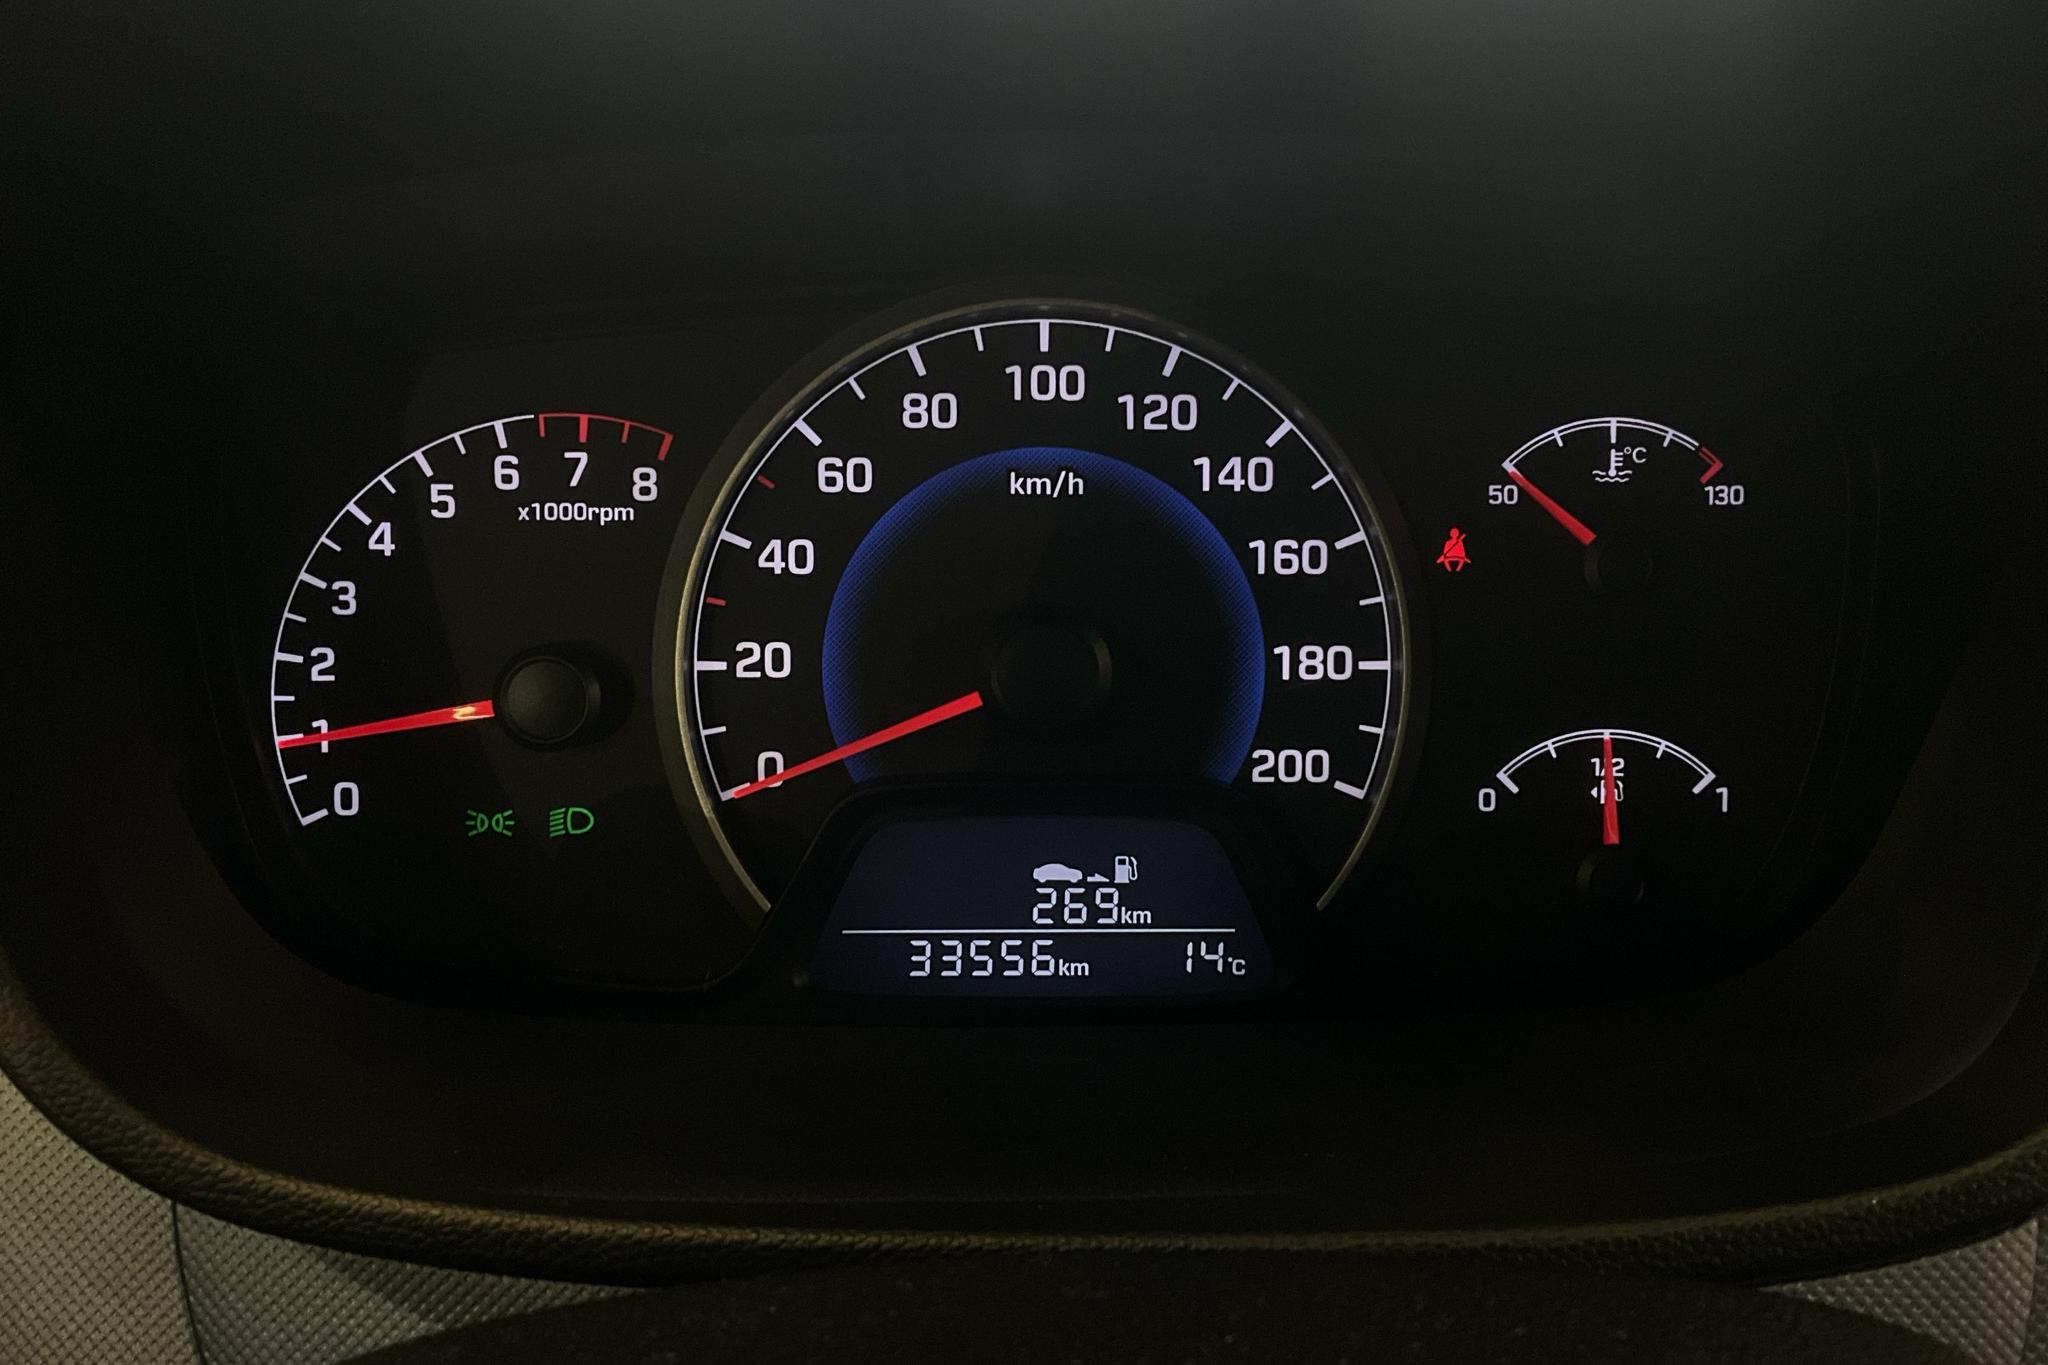 Hyundai i10 1.2 (87hk) - 3 355 mil - Manuell - Dark Grey - 2015